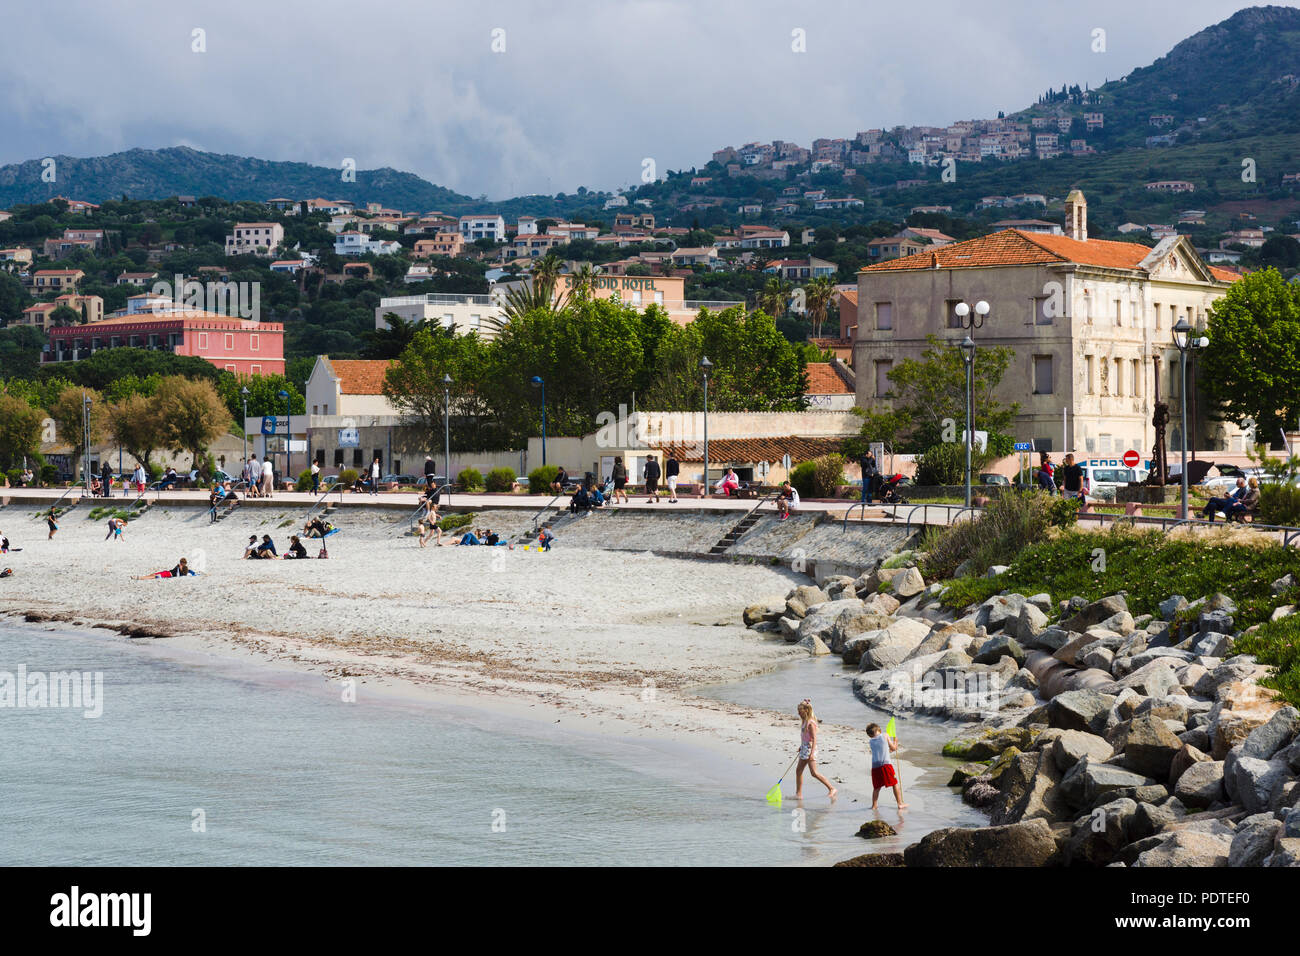 La spiaggia e il lungomare, l'Île-Rousse, Corsica, Francia Foto Stock